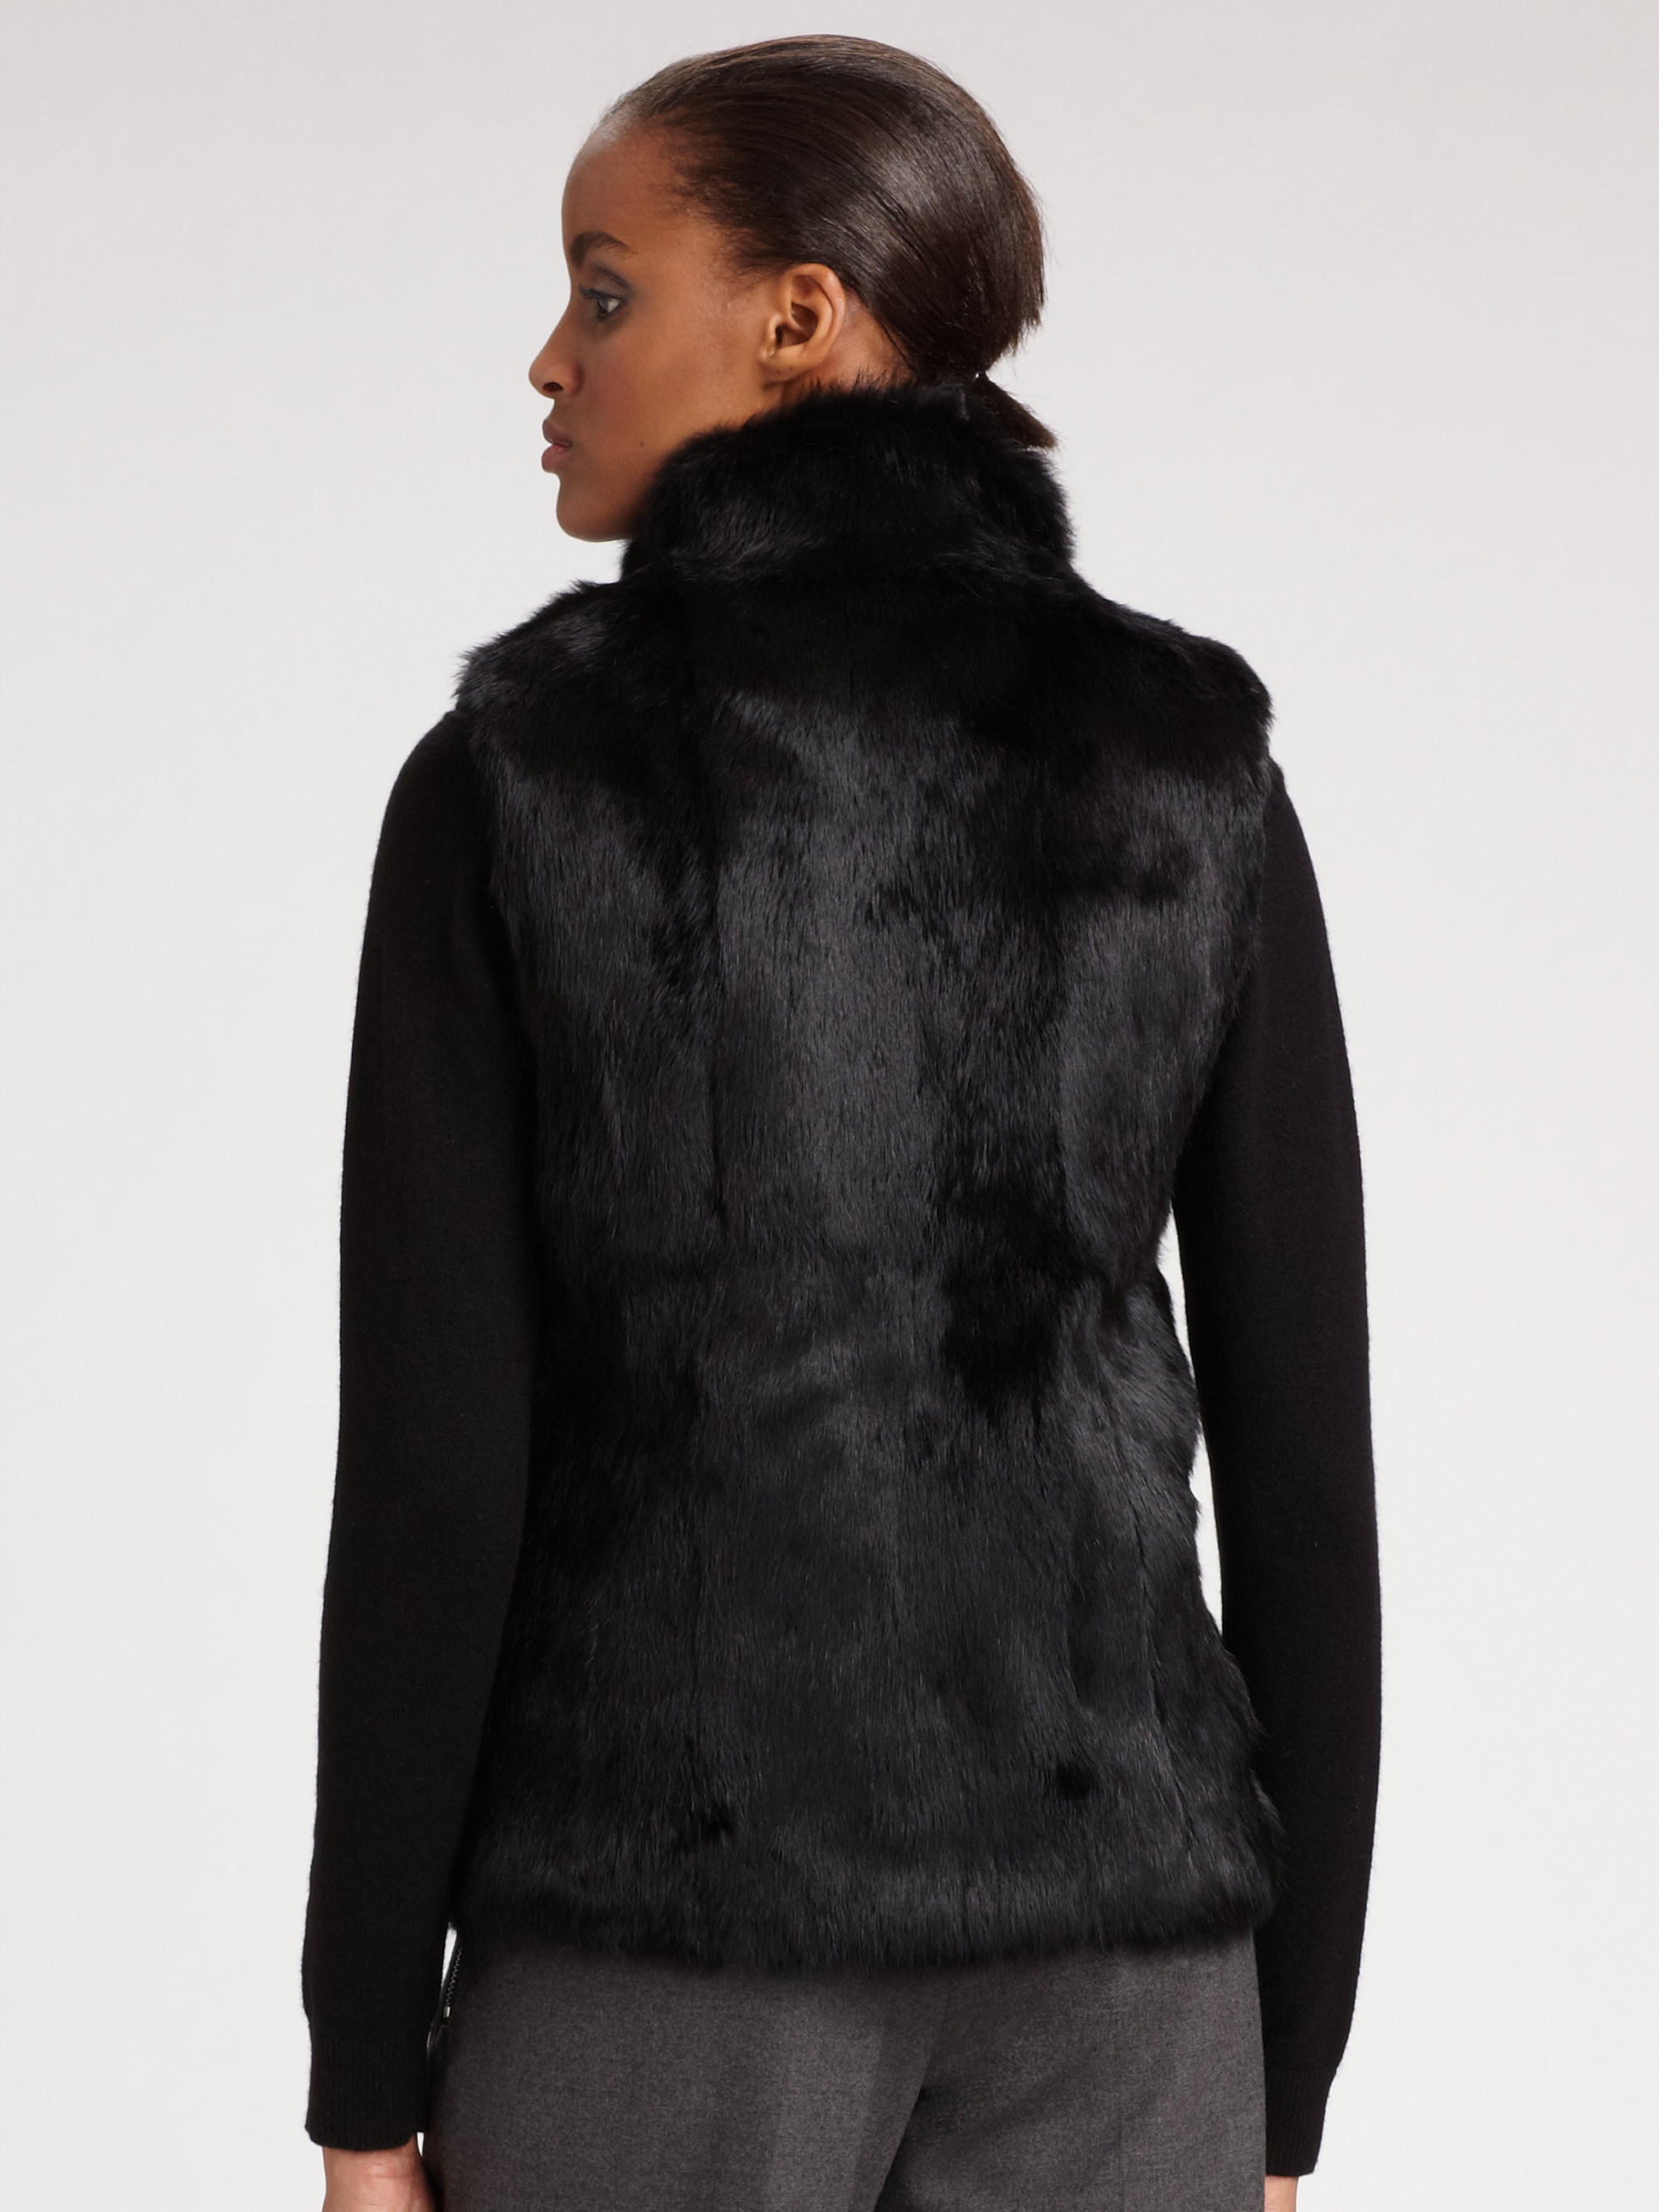 Michael Kors Black Fur Vest Online Sale, UP TO 62% OFF